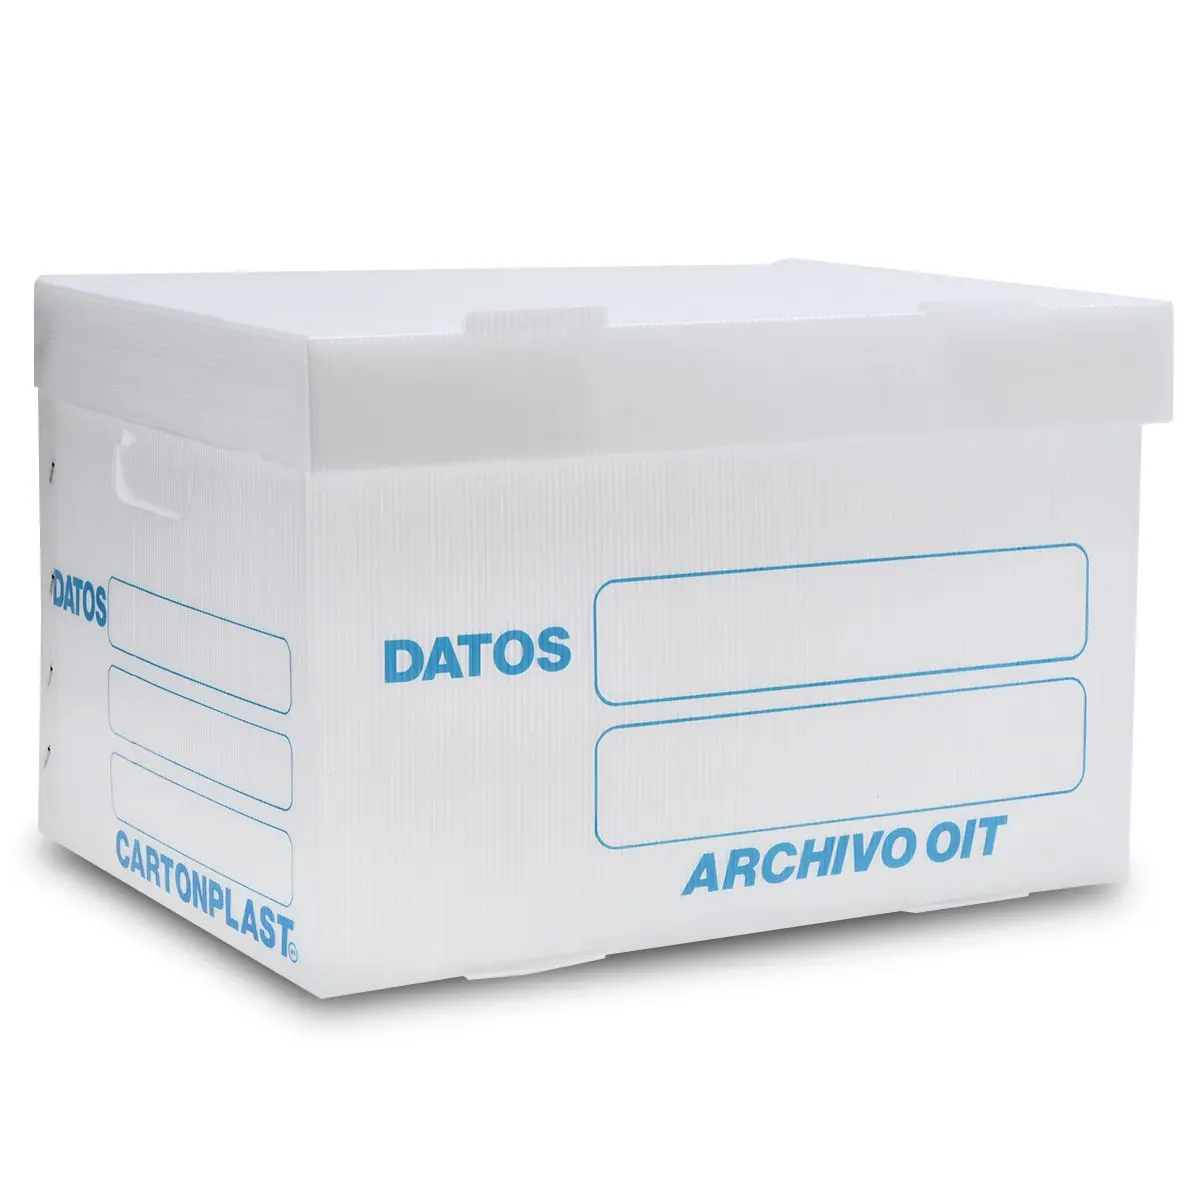 cajas de plastico archivo muerto - Cuánto pesa una caja de archivo muerto llena